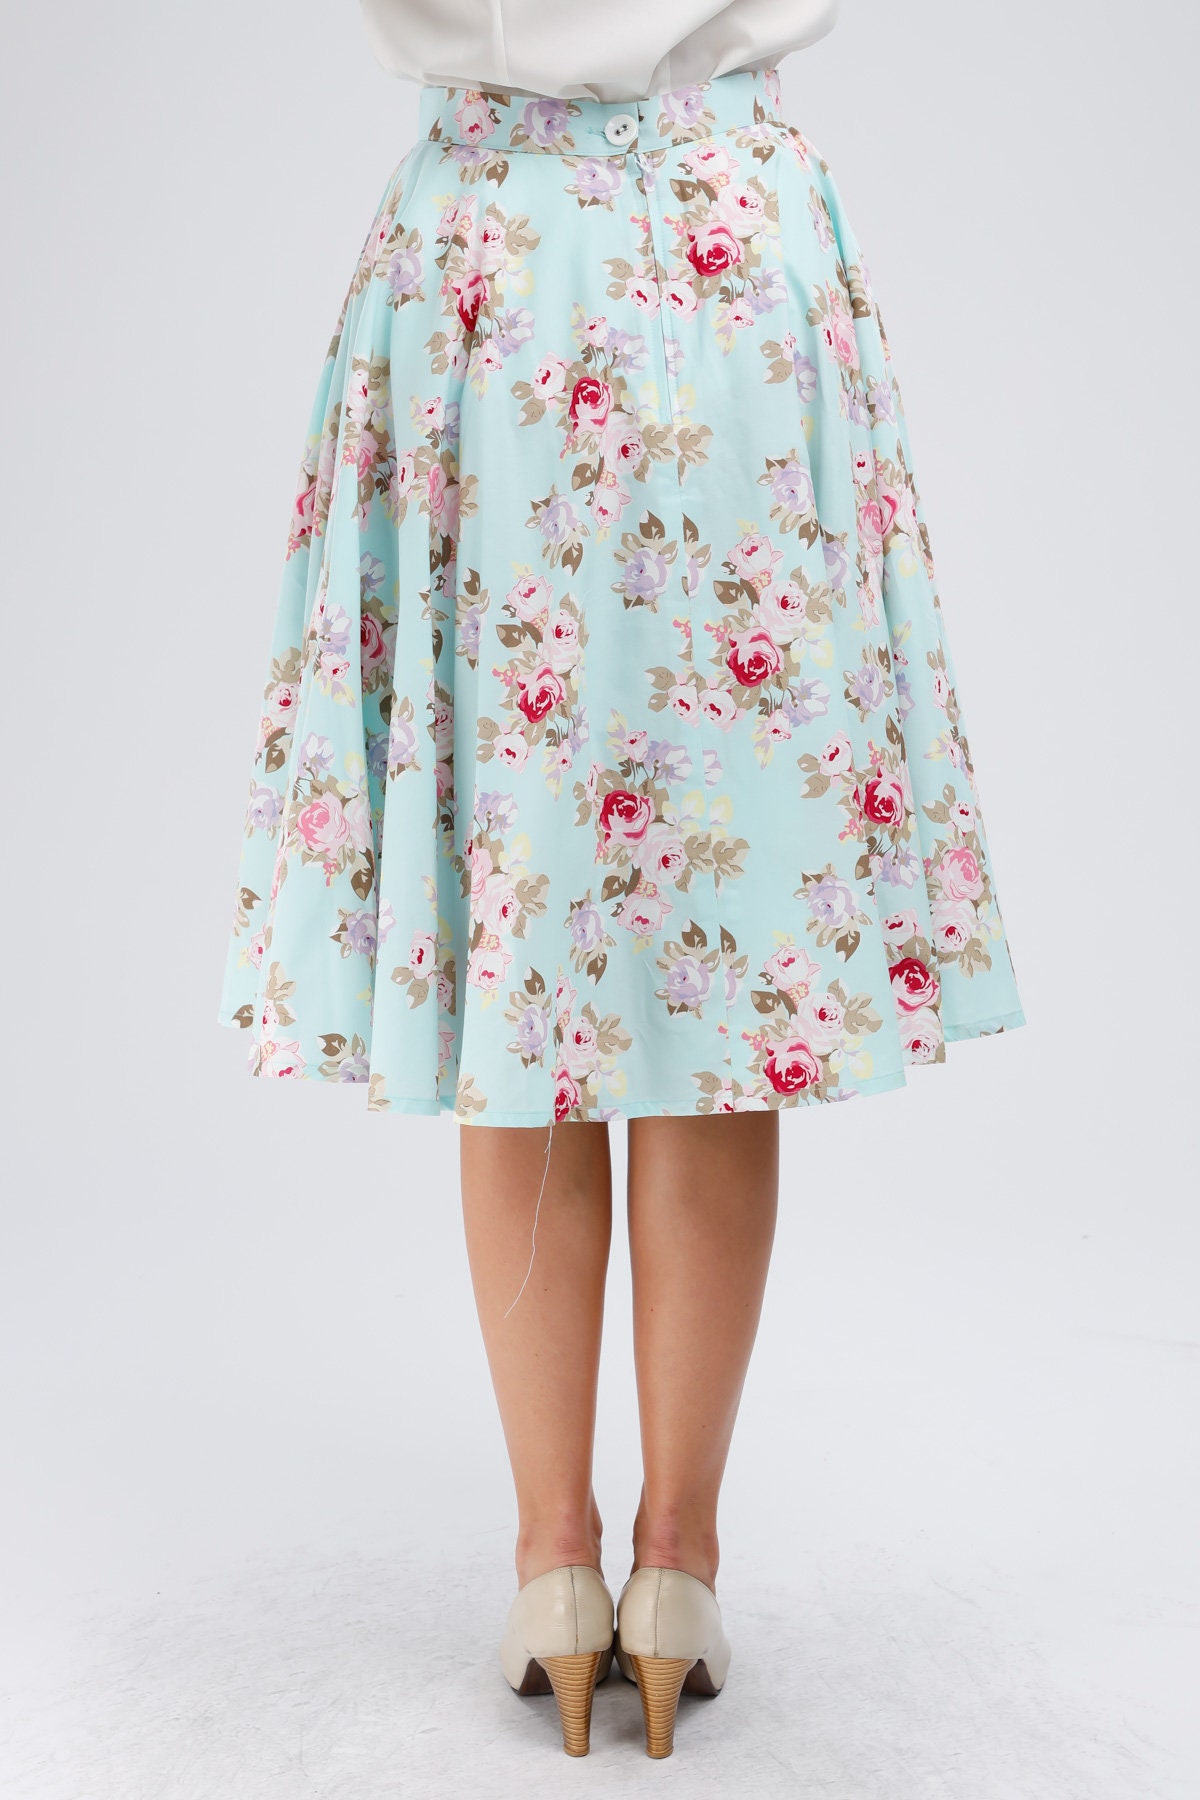 Floral Skirt Full Circle Skirt with Pockets Pastel Skirt 50s | Etsy